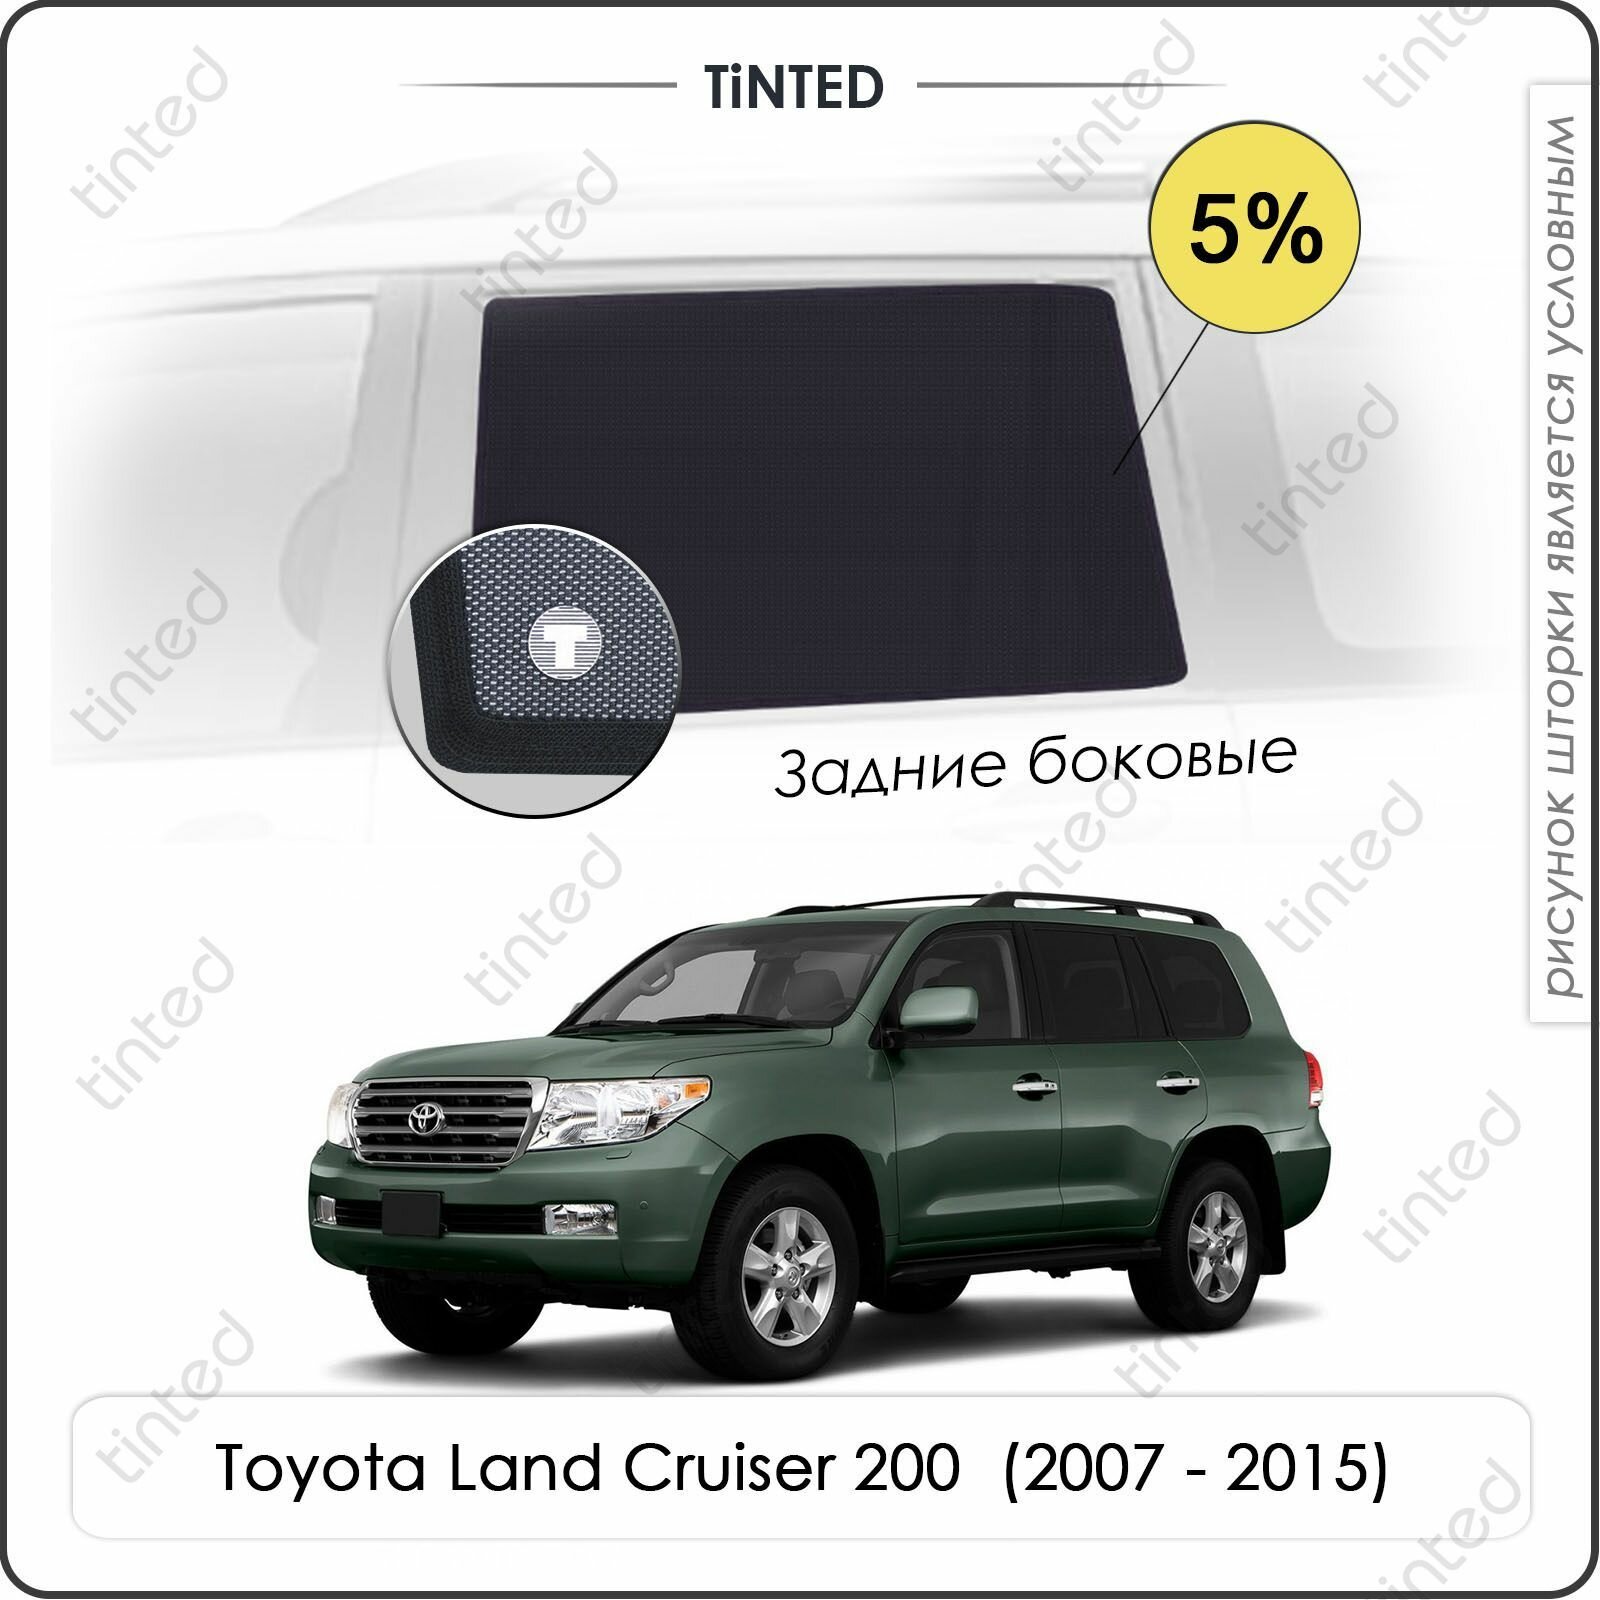 Шторки на автомобиль солнцезащитные Toyota Land Cruiser 200 Внедорожник 5дв. (2007 - 2015) на задние двери 5%, сетки от солнца в машину тойота лэнд крузер, Каркасные автошторки Premium